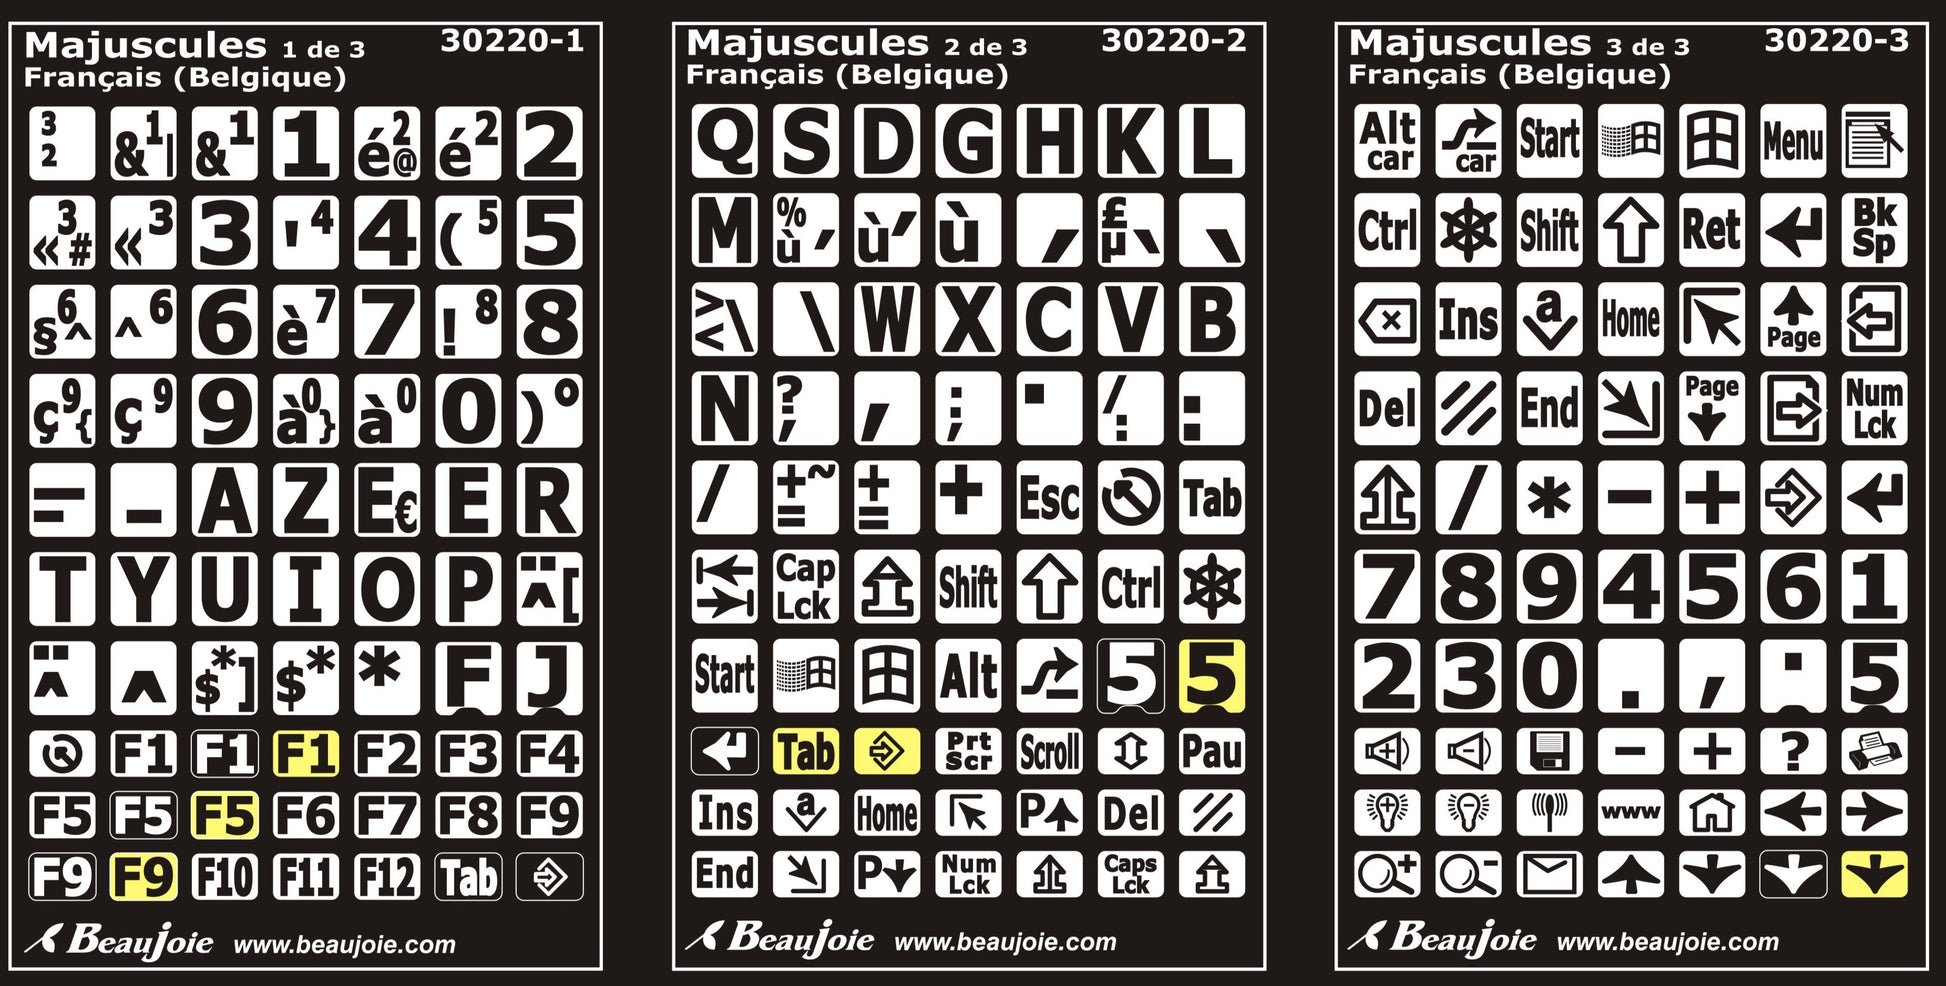 Autocollants lettres majuscules clavier Windows français belgique 30220